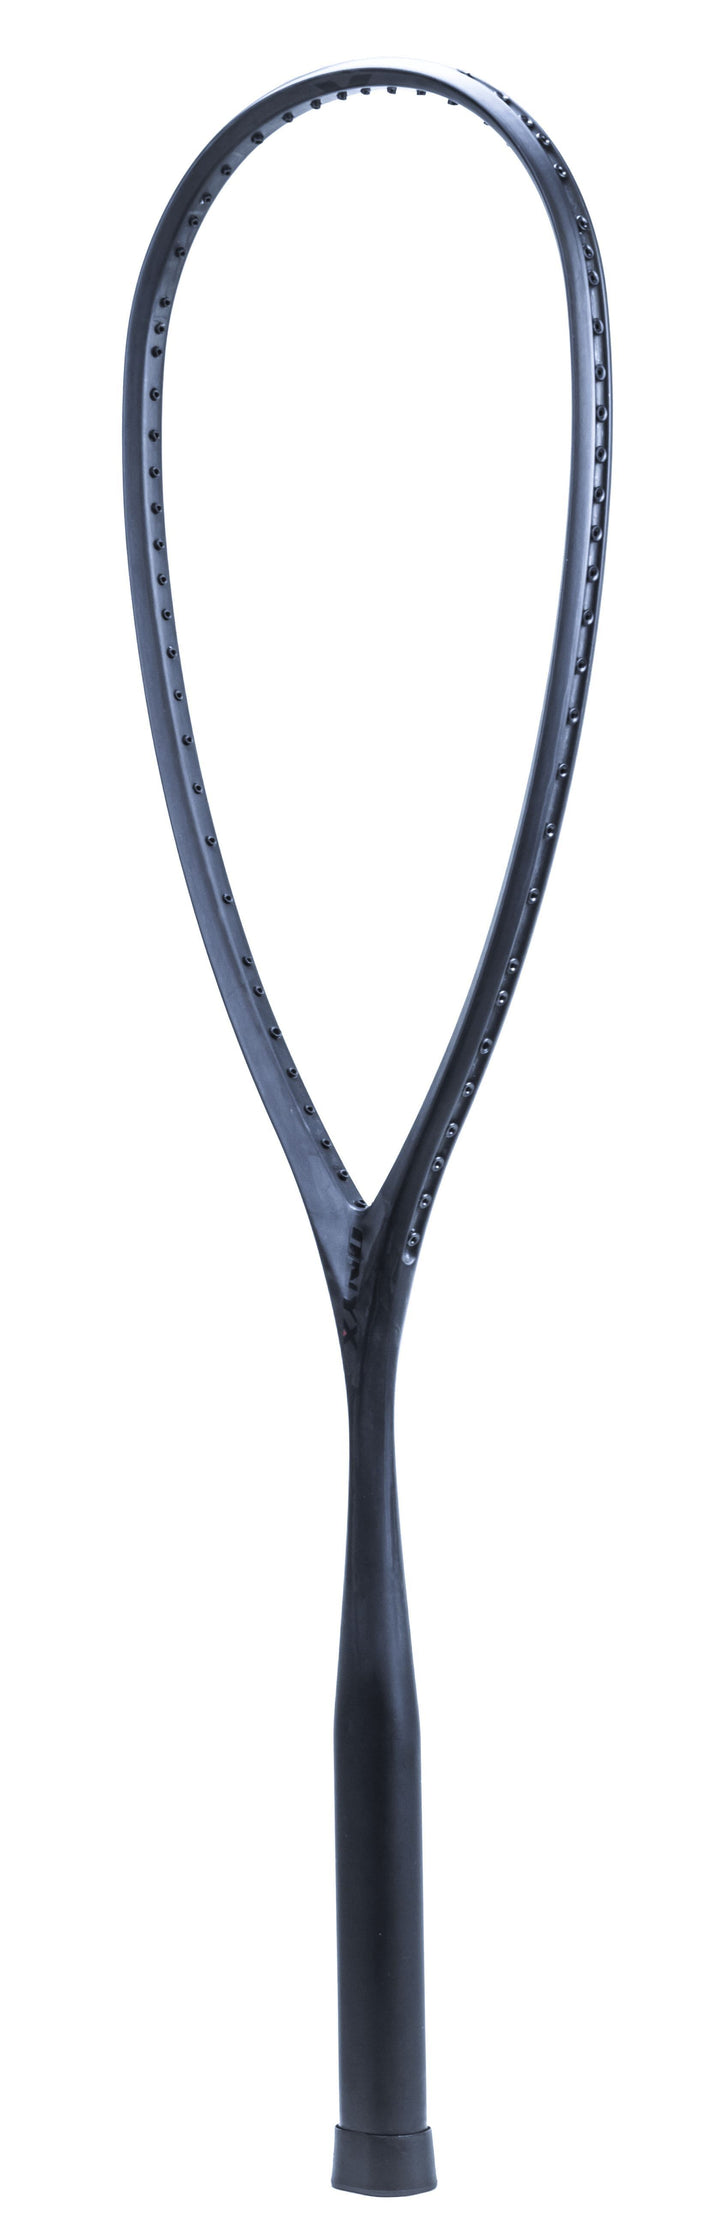 Xamsa Onyx Incognito eXposed Squash Racquet Frame Squash Racquets Xamsa No Strings 